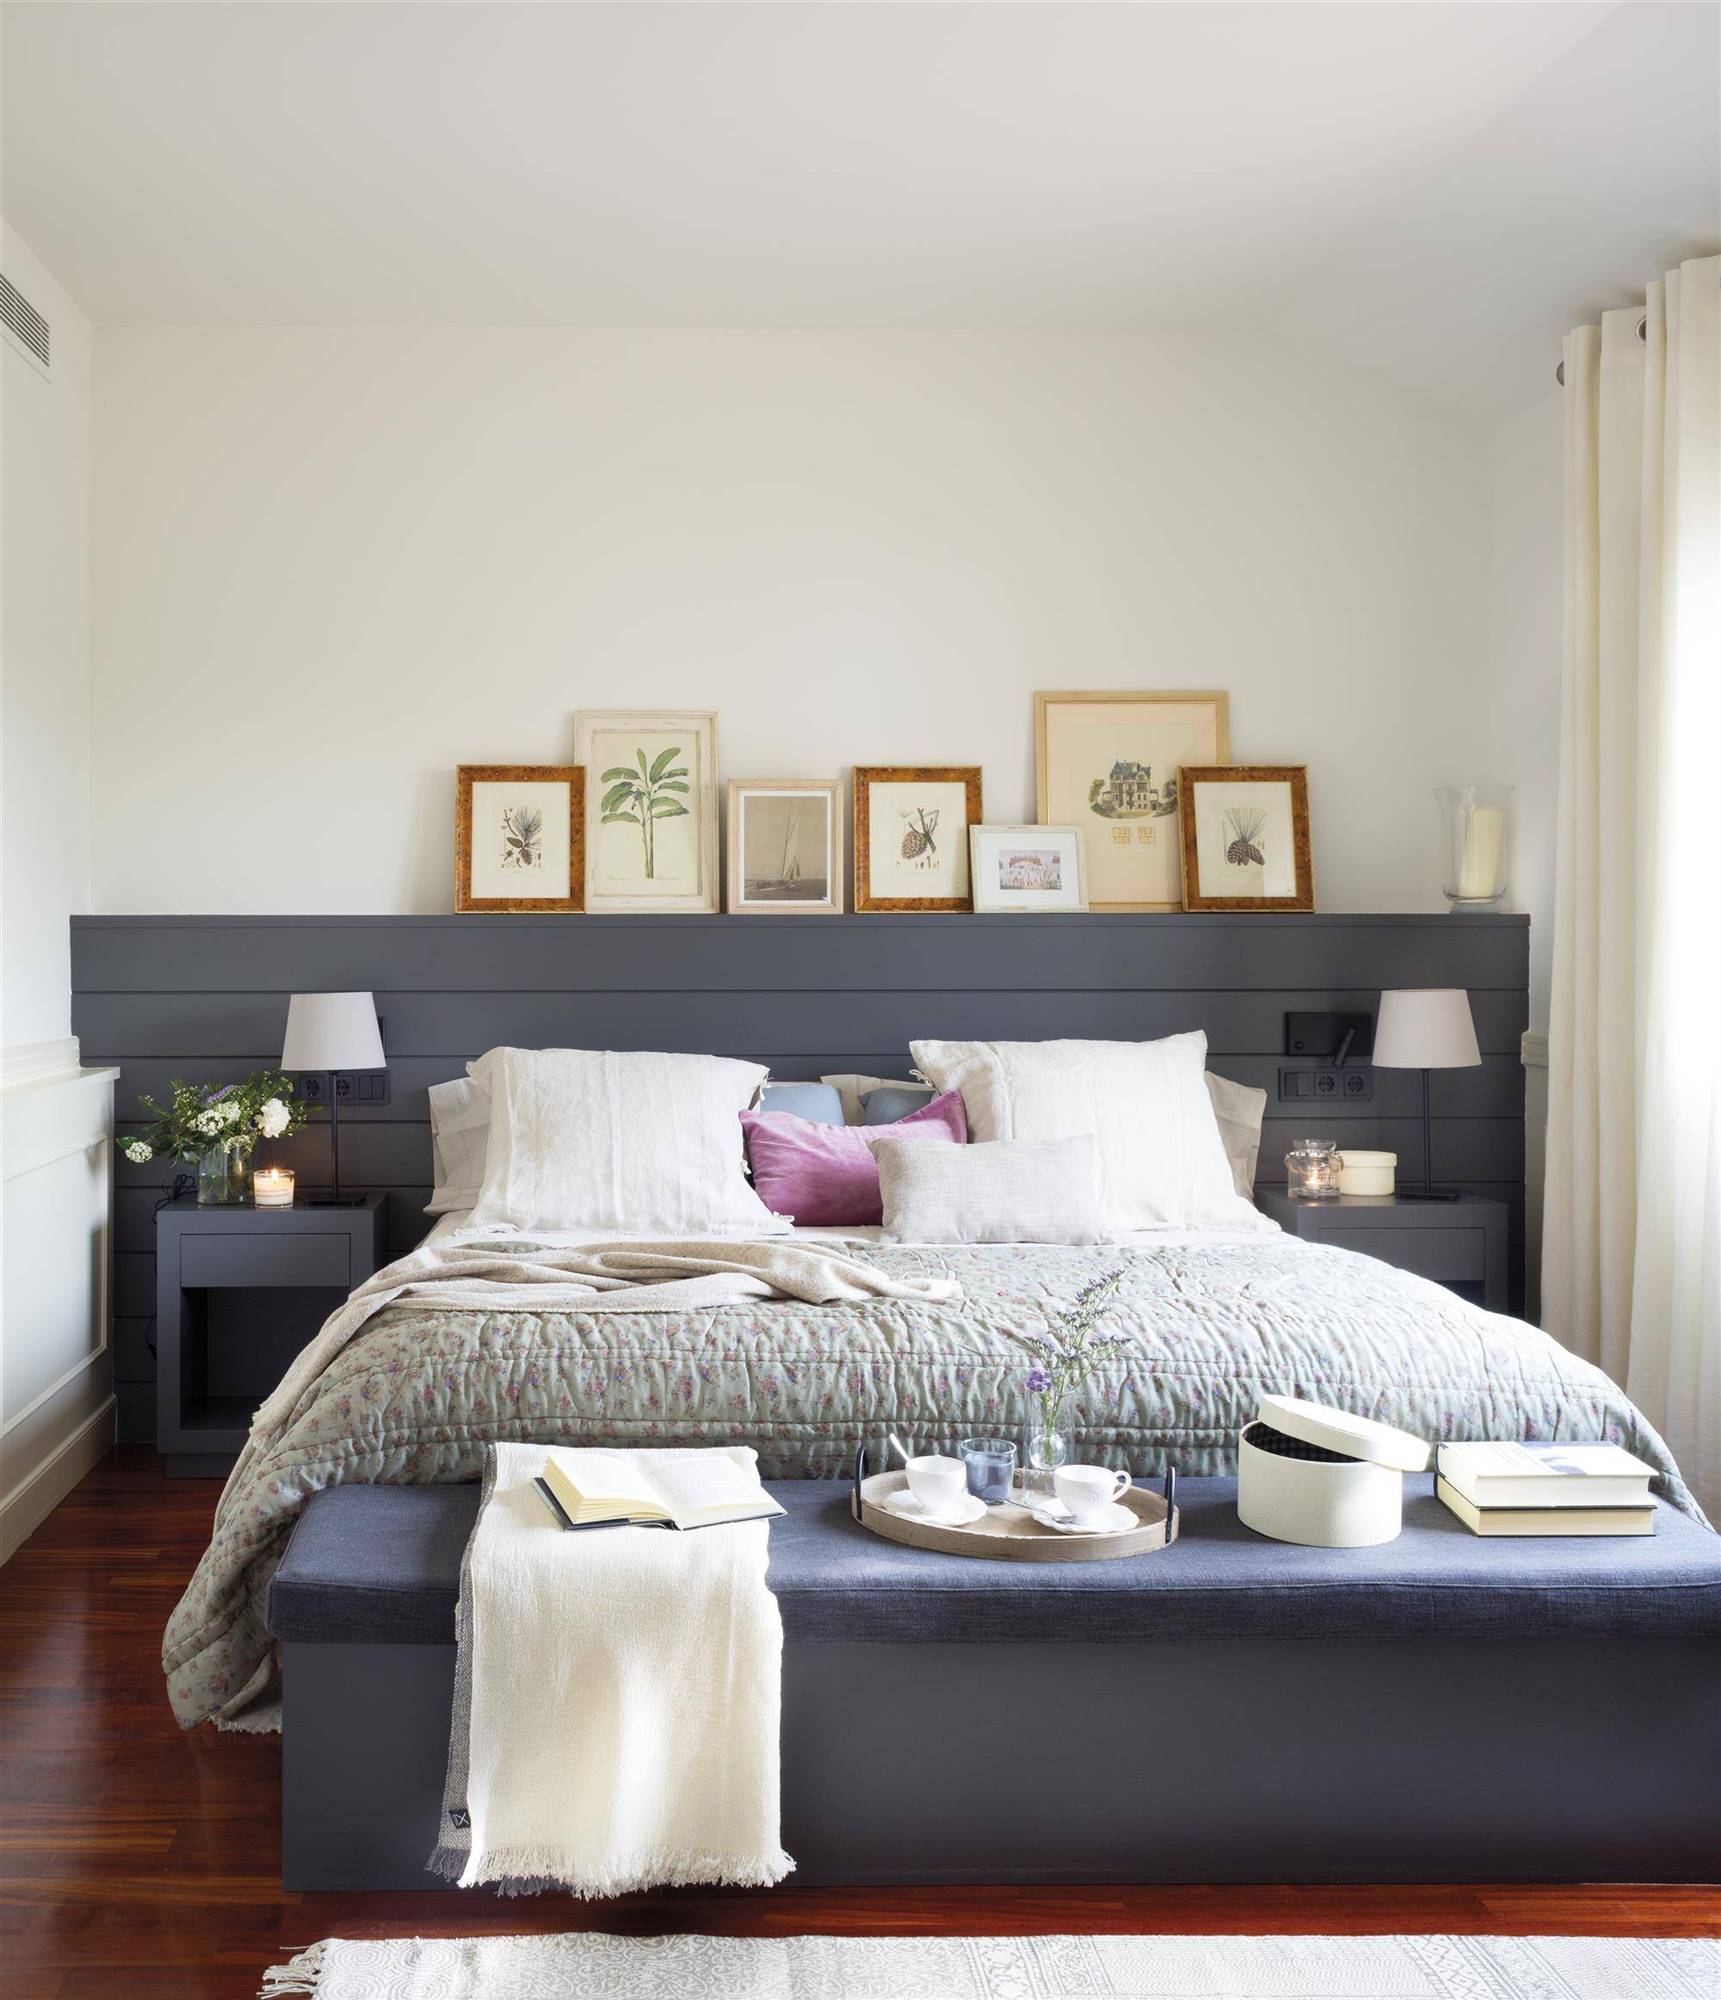 Muebles a medida: cabeceros de cama muy ingeniosos